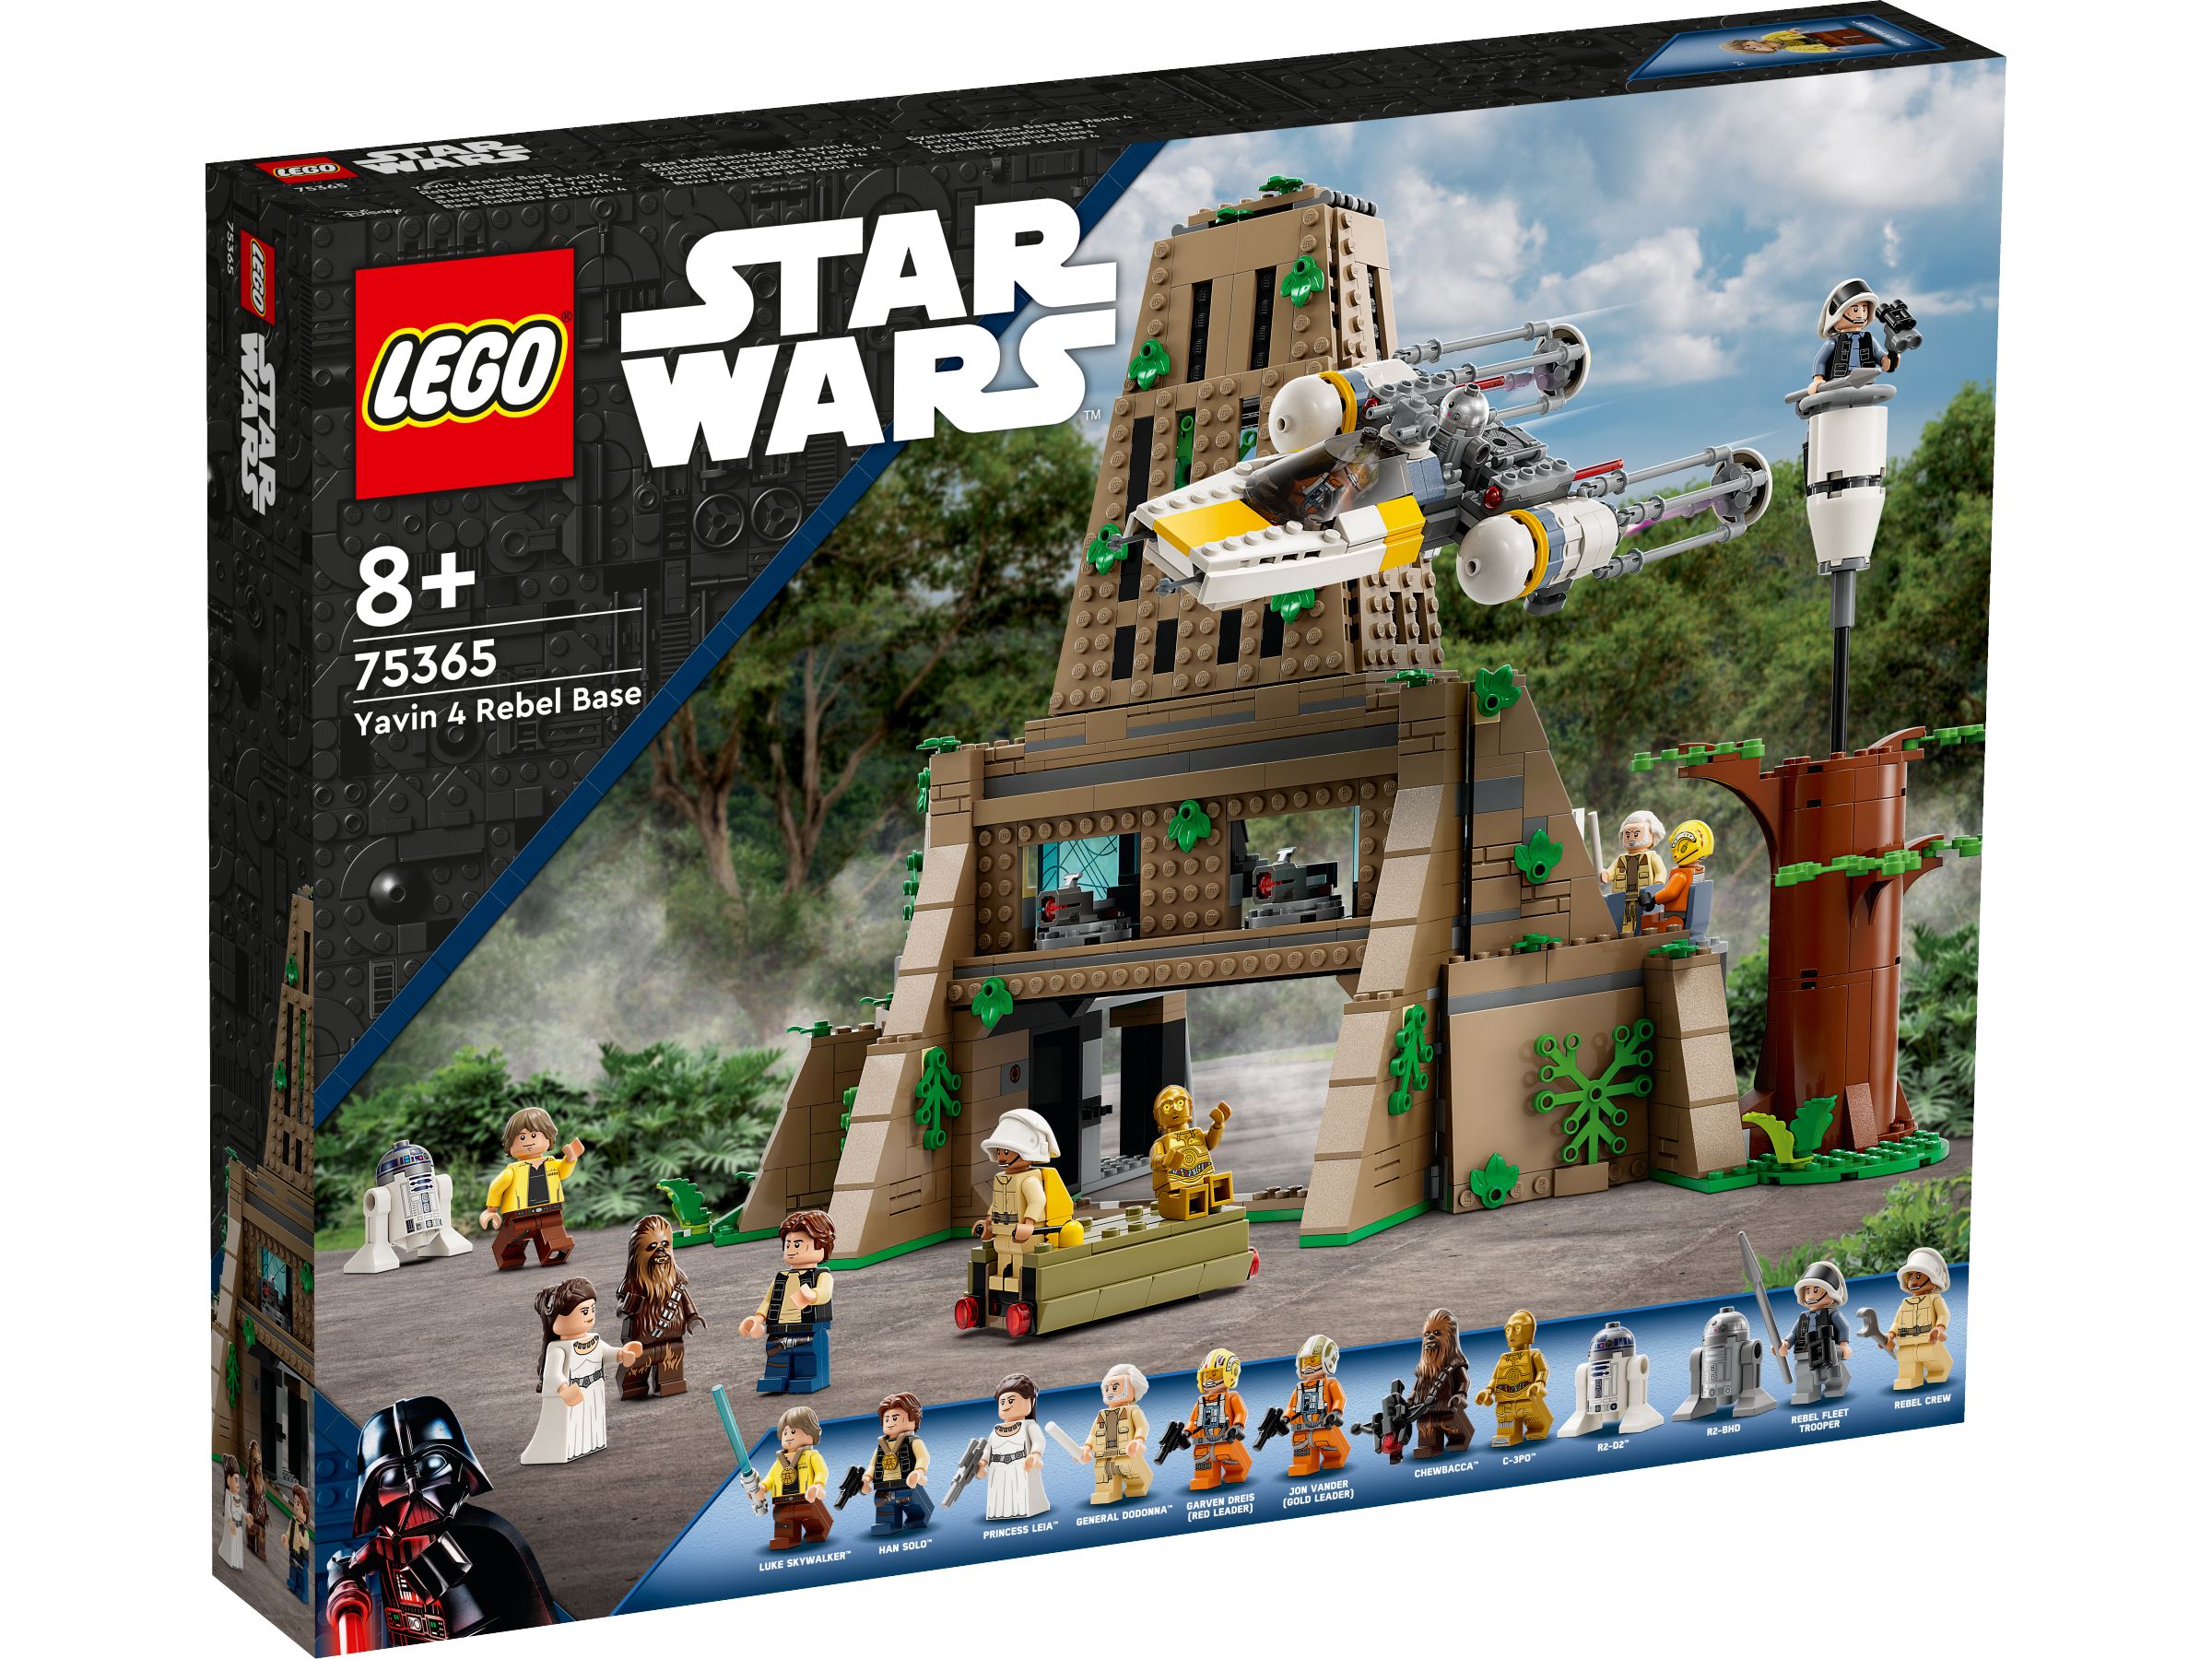 LEGO Star Wars 75365 Rebellenbasis auf Yavin 4 LEGO_75365_Box1_v29.jpg